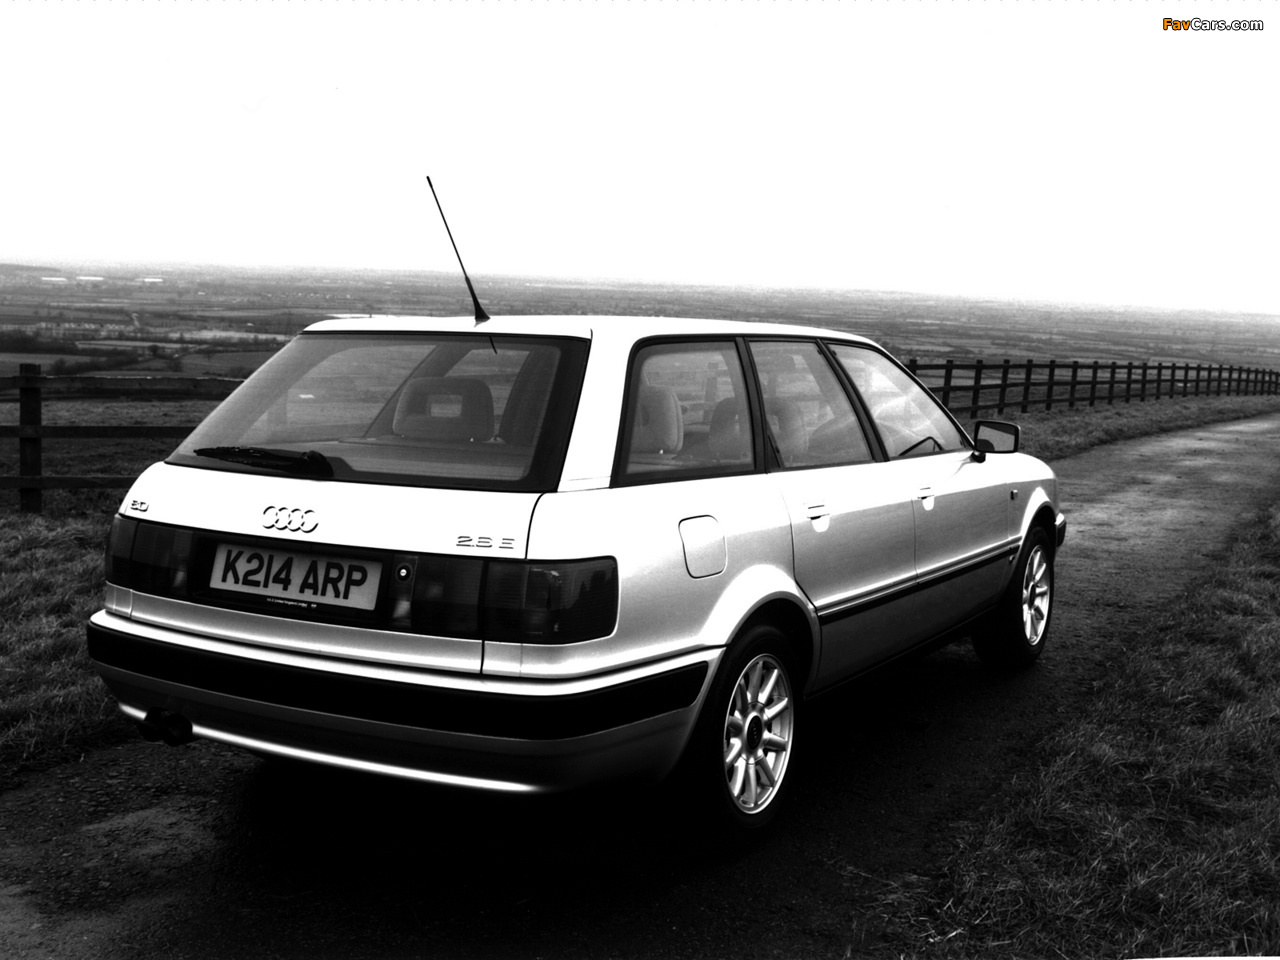 Audi 80 Avant UK-spec 8C,B4 (1991-1996) photos (1280x960)